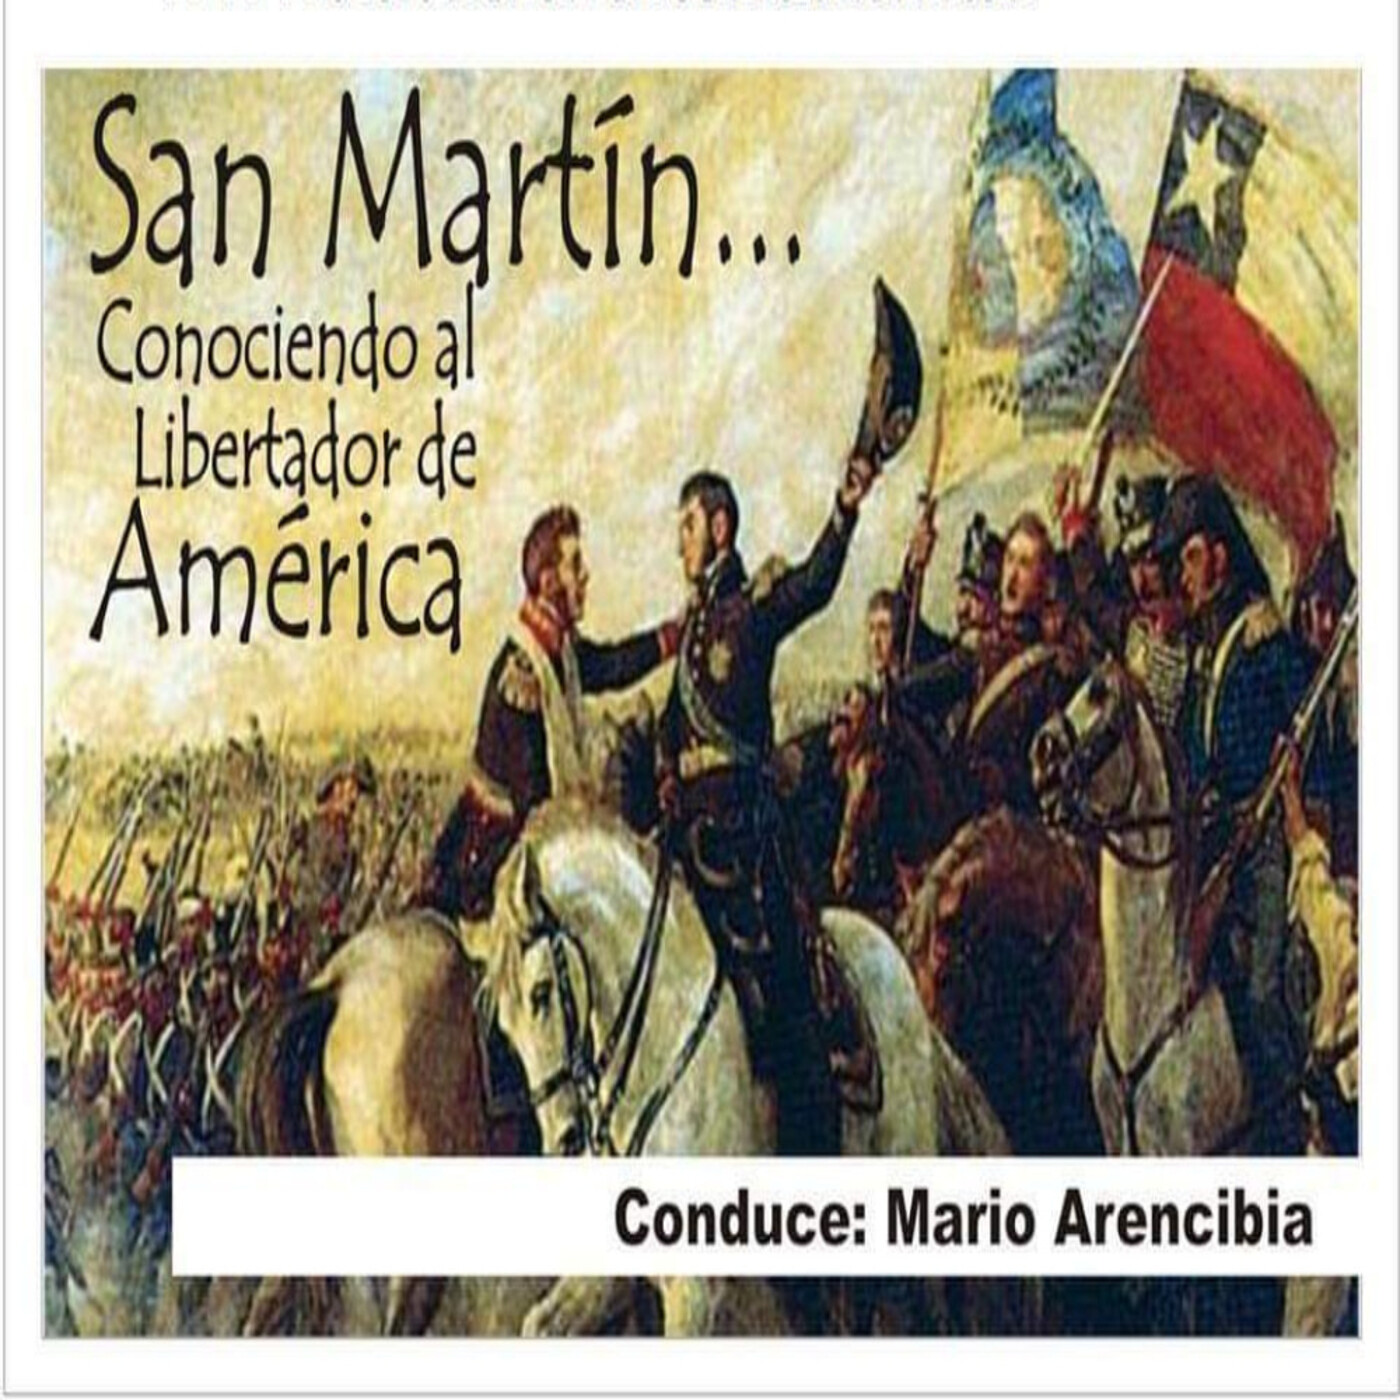 16/03/2024 San Martín (Conociendo al Libertador de America)